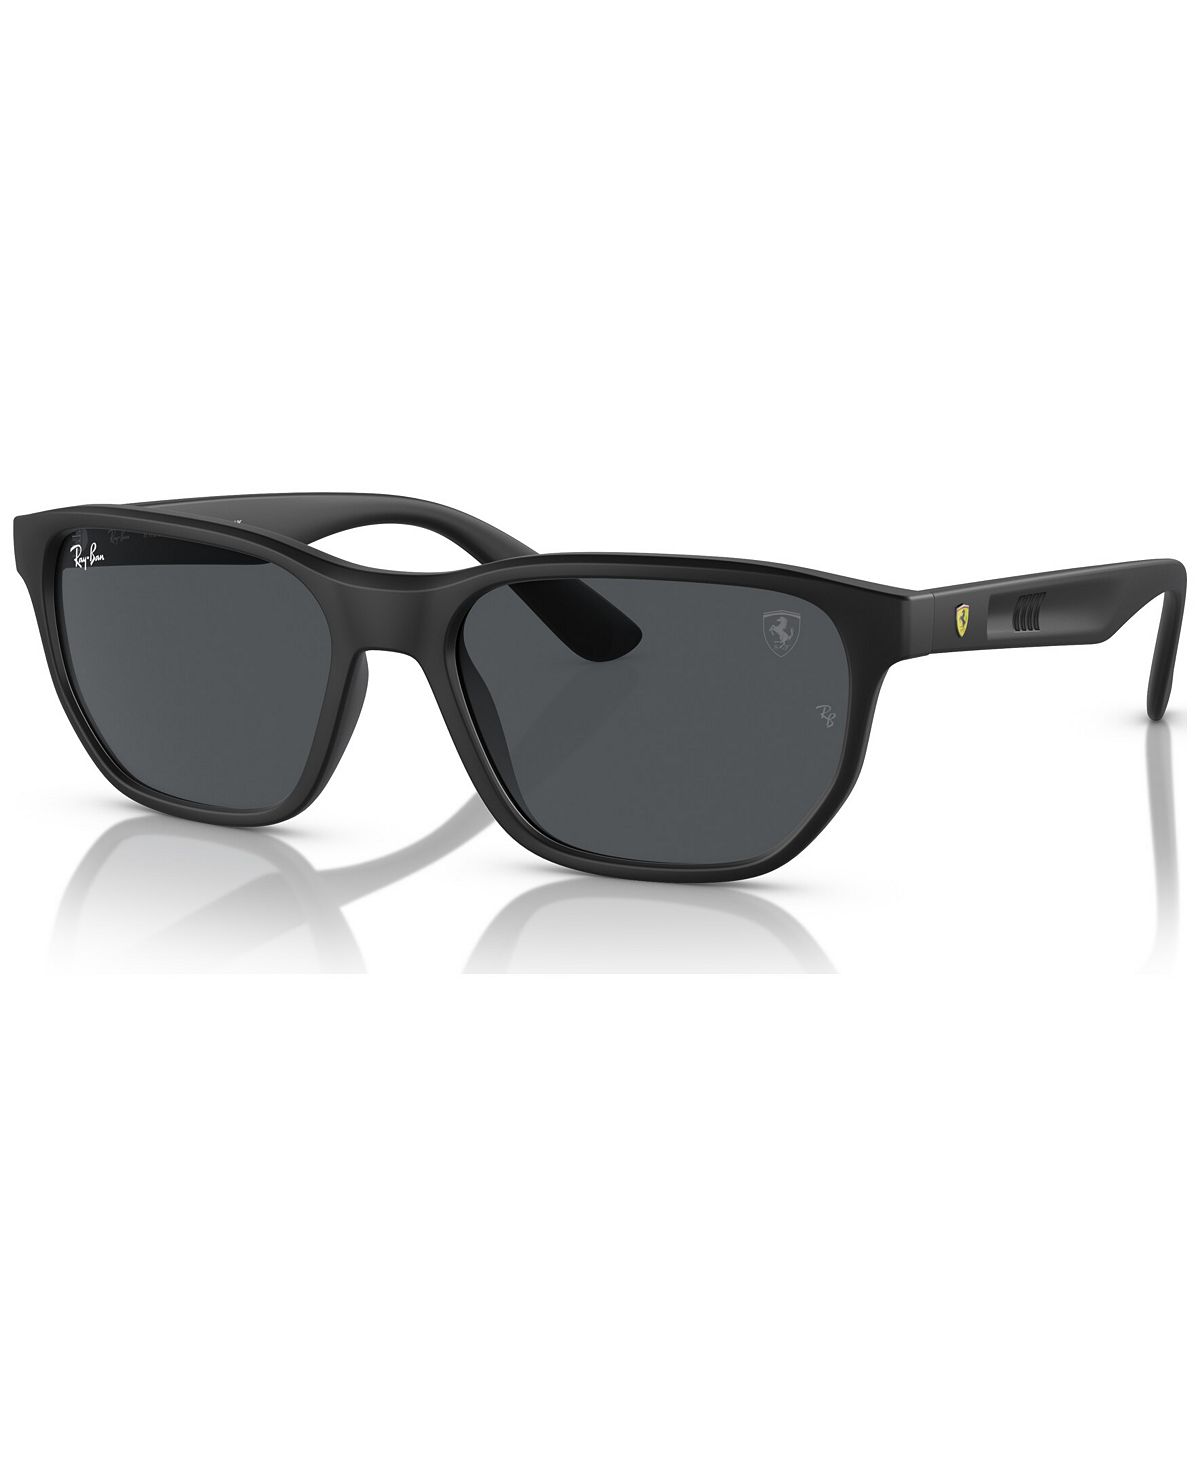 Мужские солнцезащитные очки, RB4404M Коллекция Scuderia Ferrari Ray-Ban